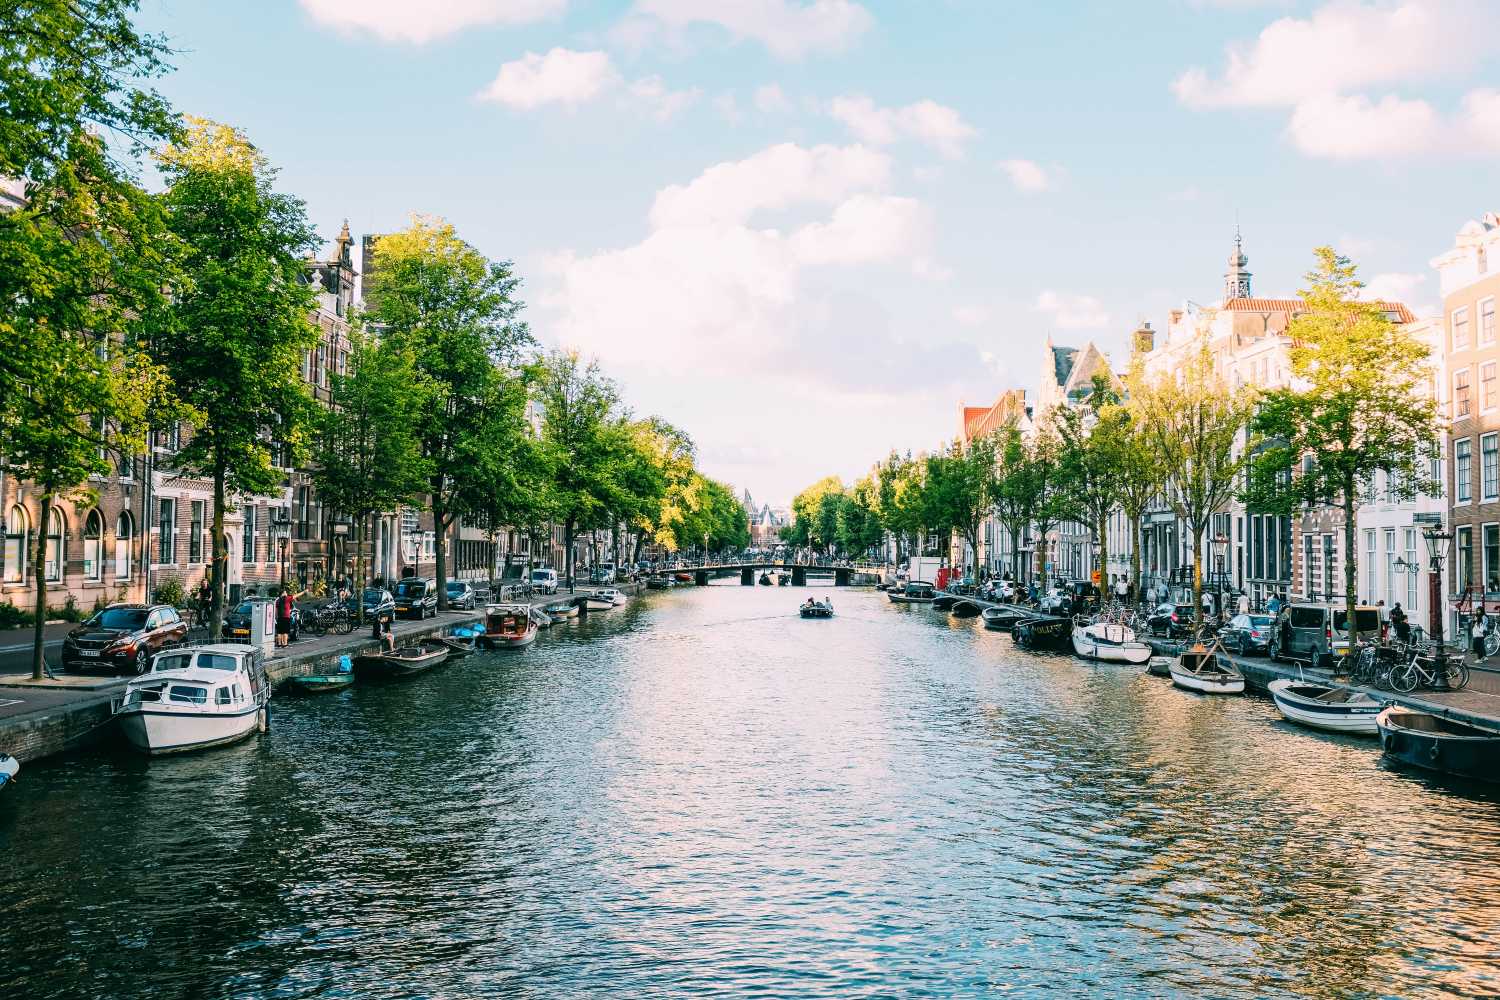 Blick auf eine Gracht in Amsterdam - bei einem Amsterdam Urlaub zu erleben